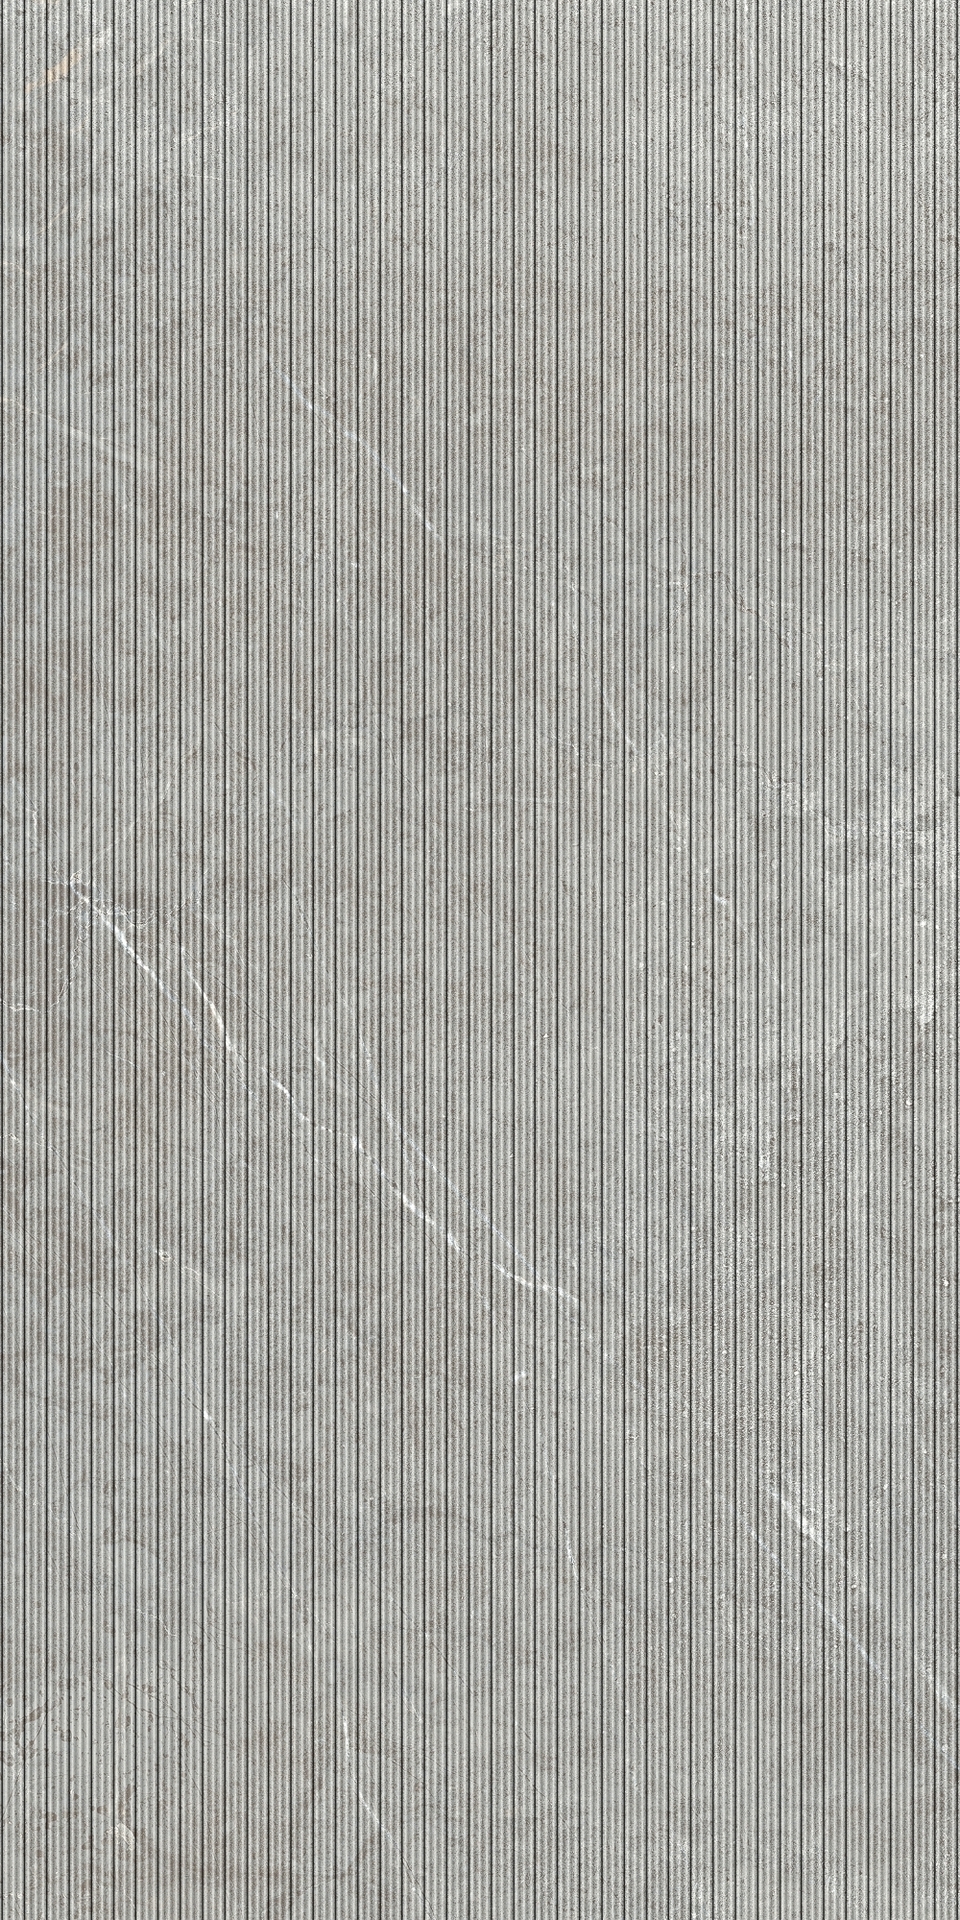 Unicom Starker Evostone Mist Struttura Naturale Texture 7891 30x60cm